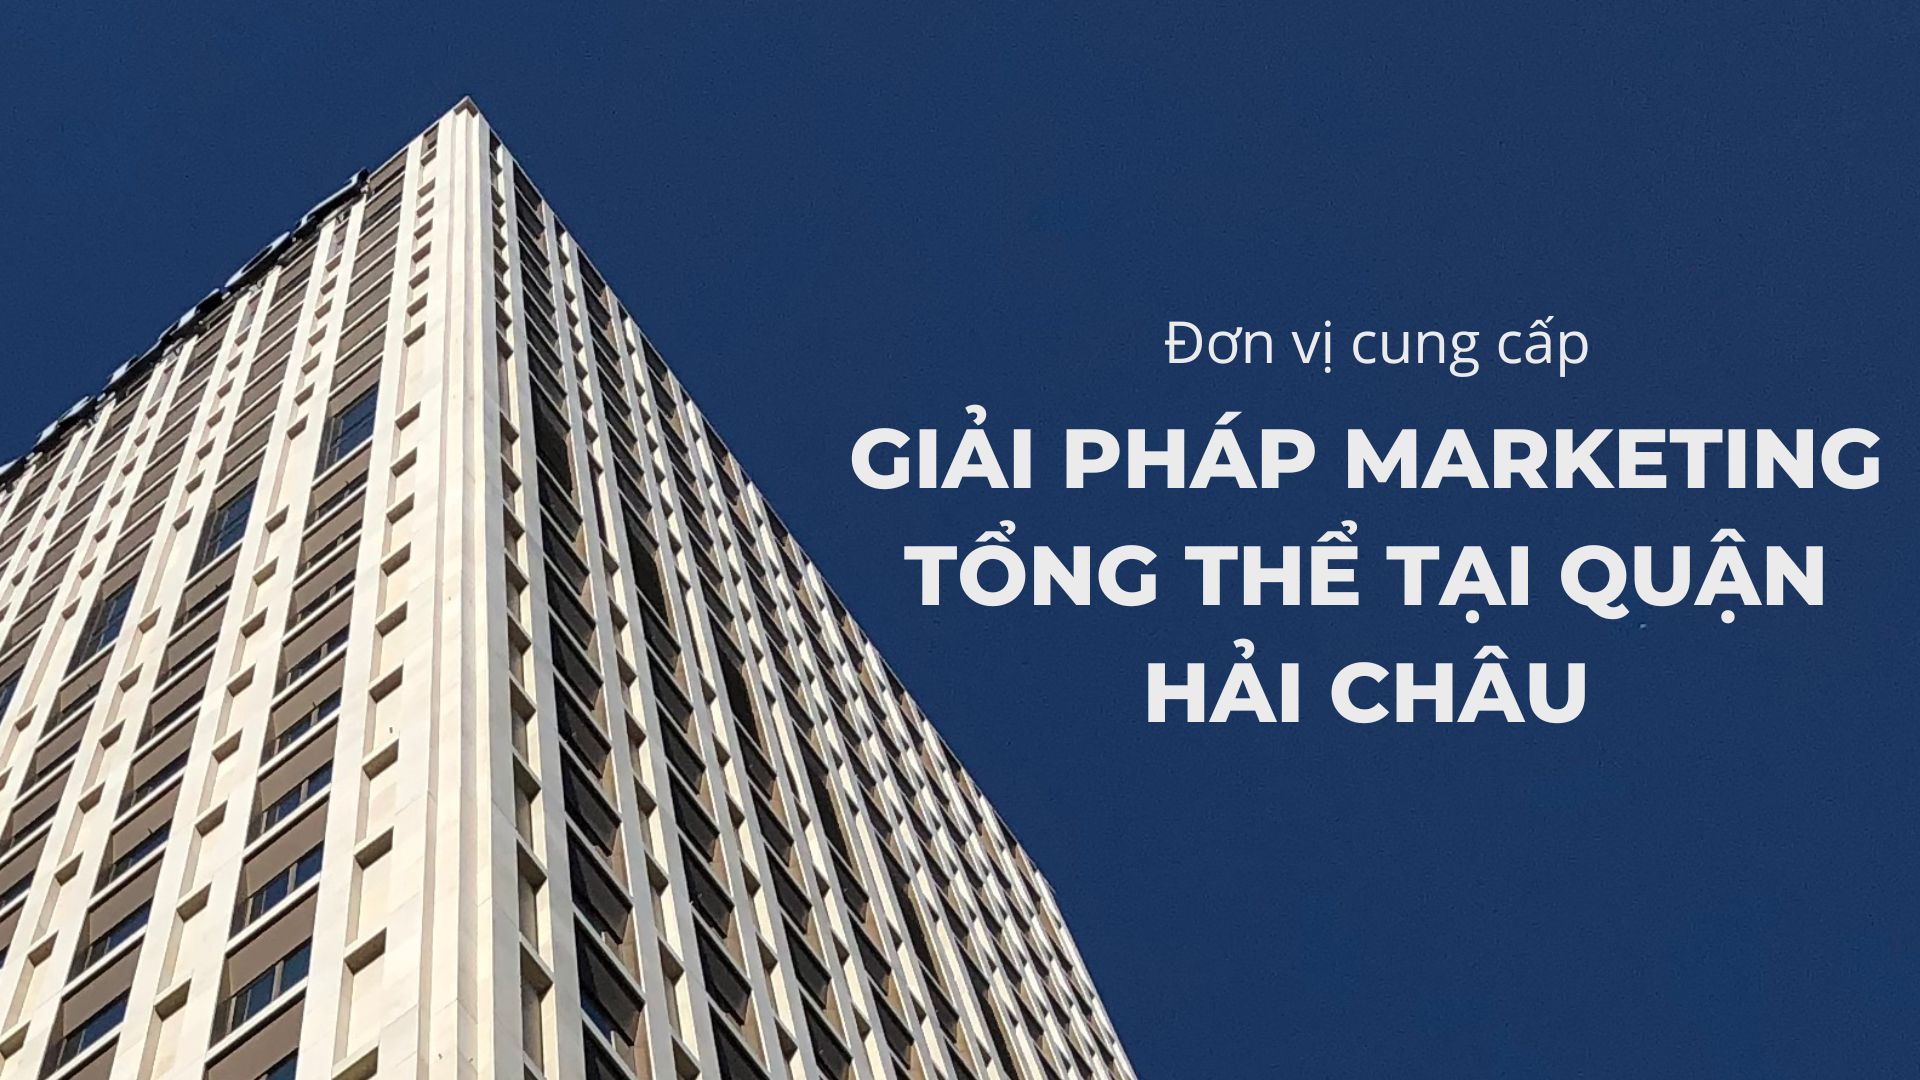 giai phap marketing tong the cho doanh nghiep tai da nang